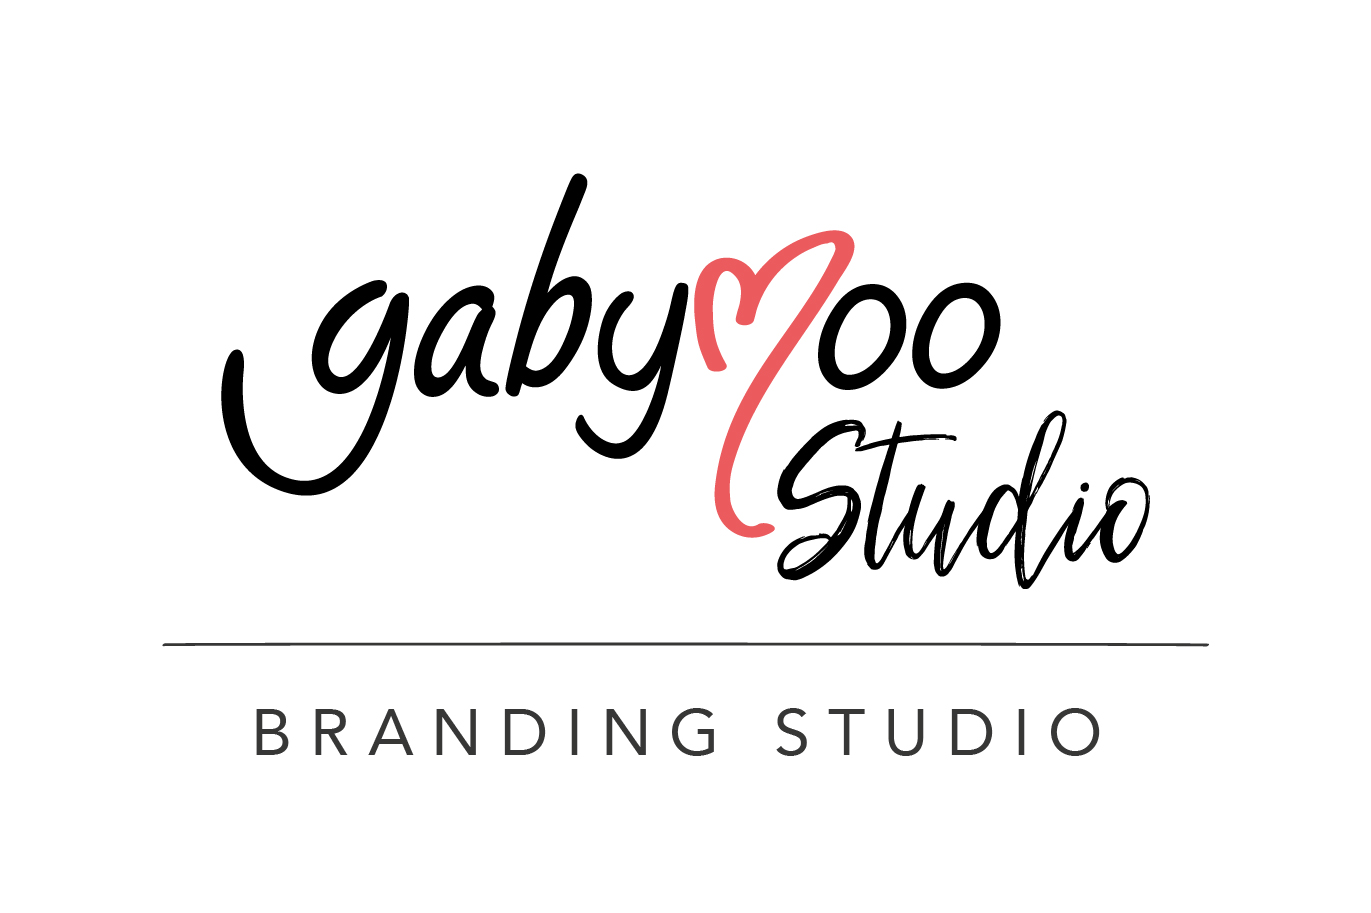 GabyMoo Studio